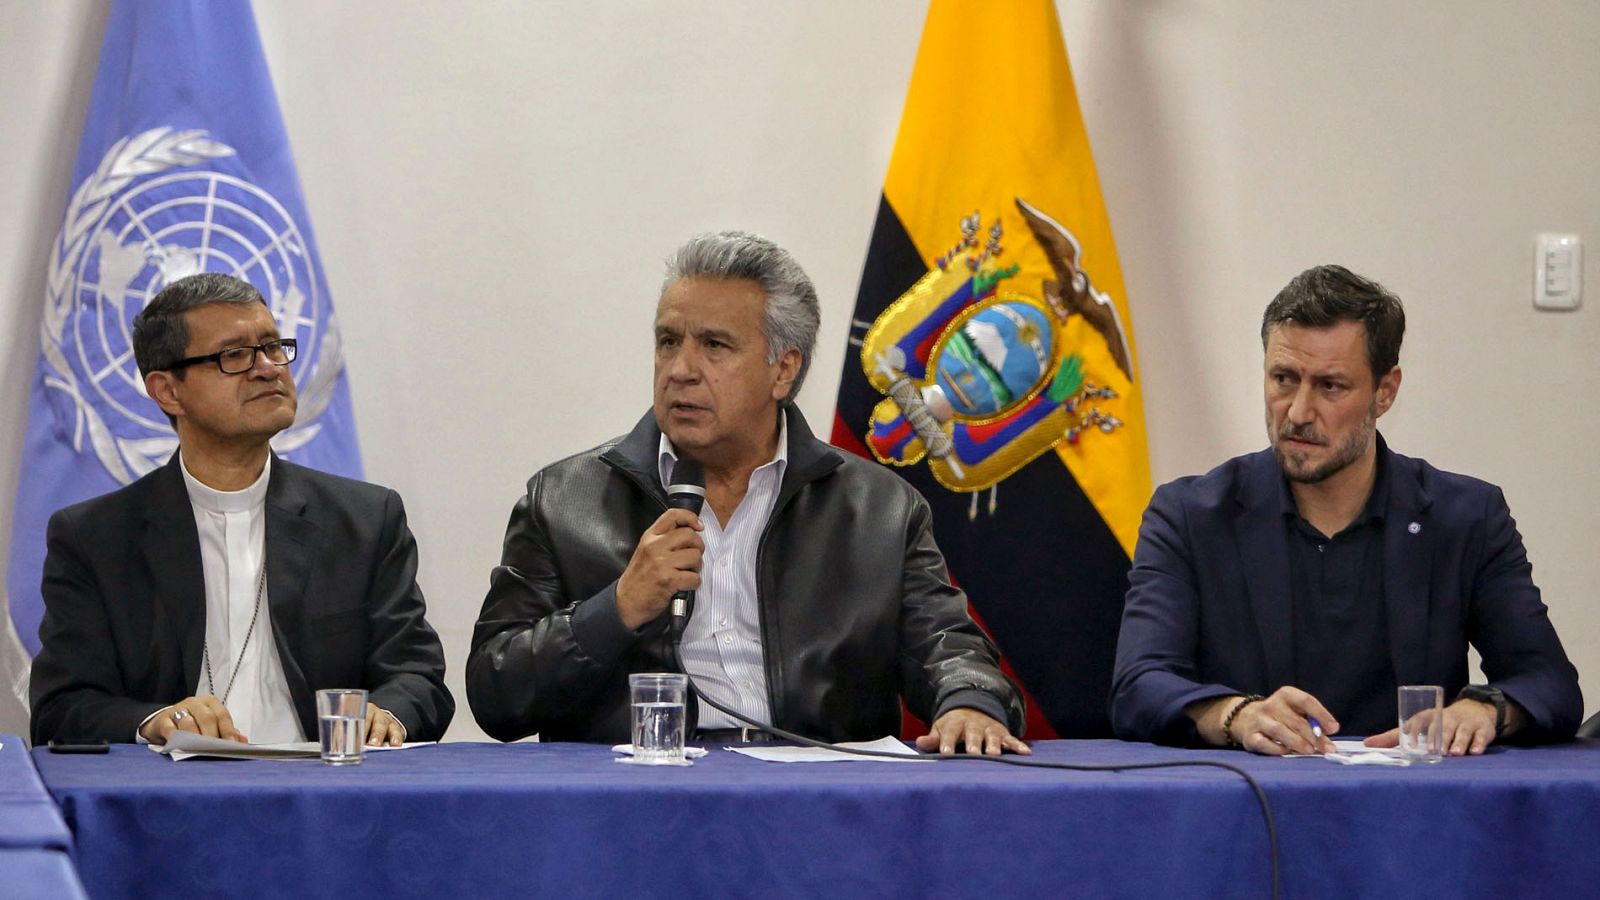 Protestas Ecuador | Acuerdo en Ecuador para eliminar el decreto de la gasolina - RTVE.es